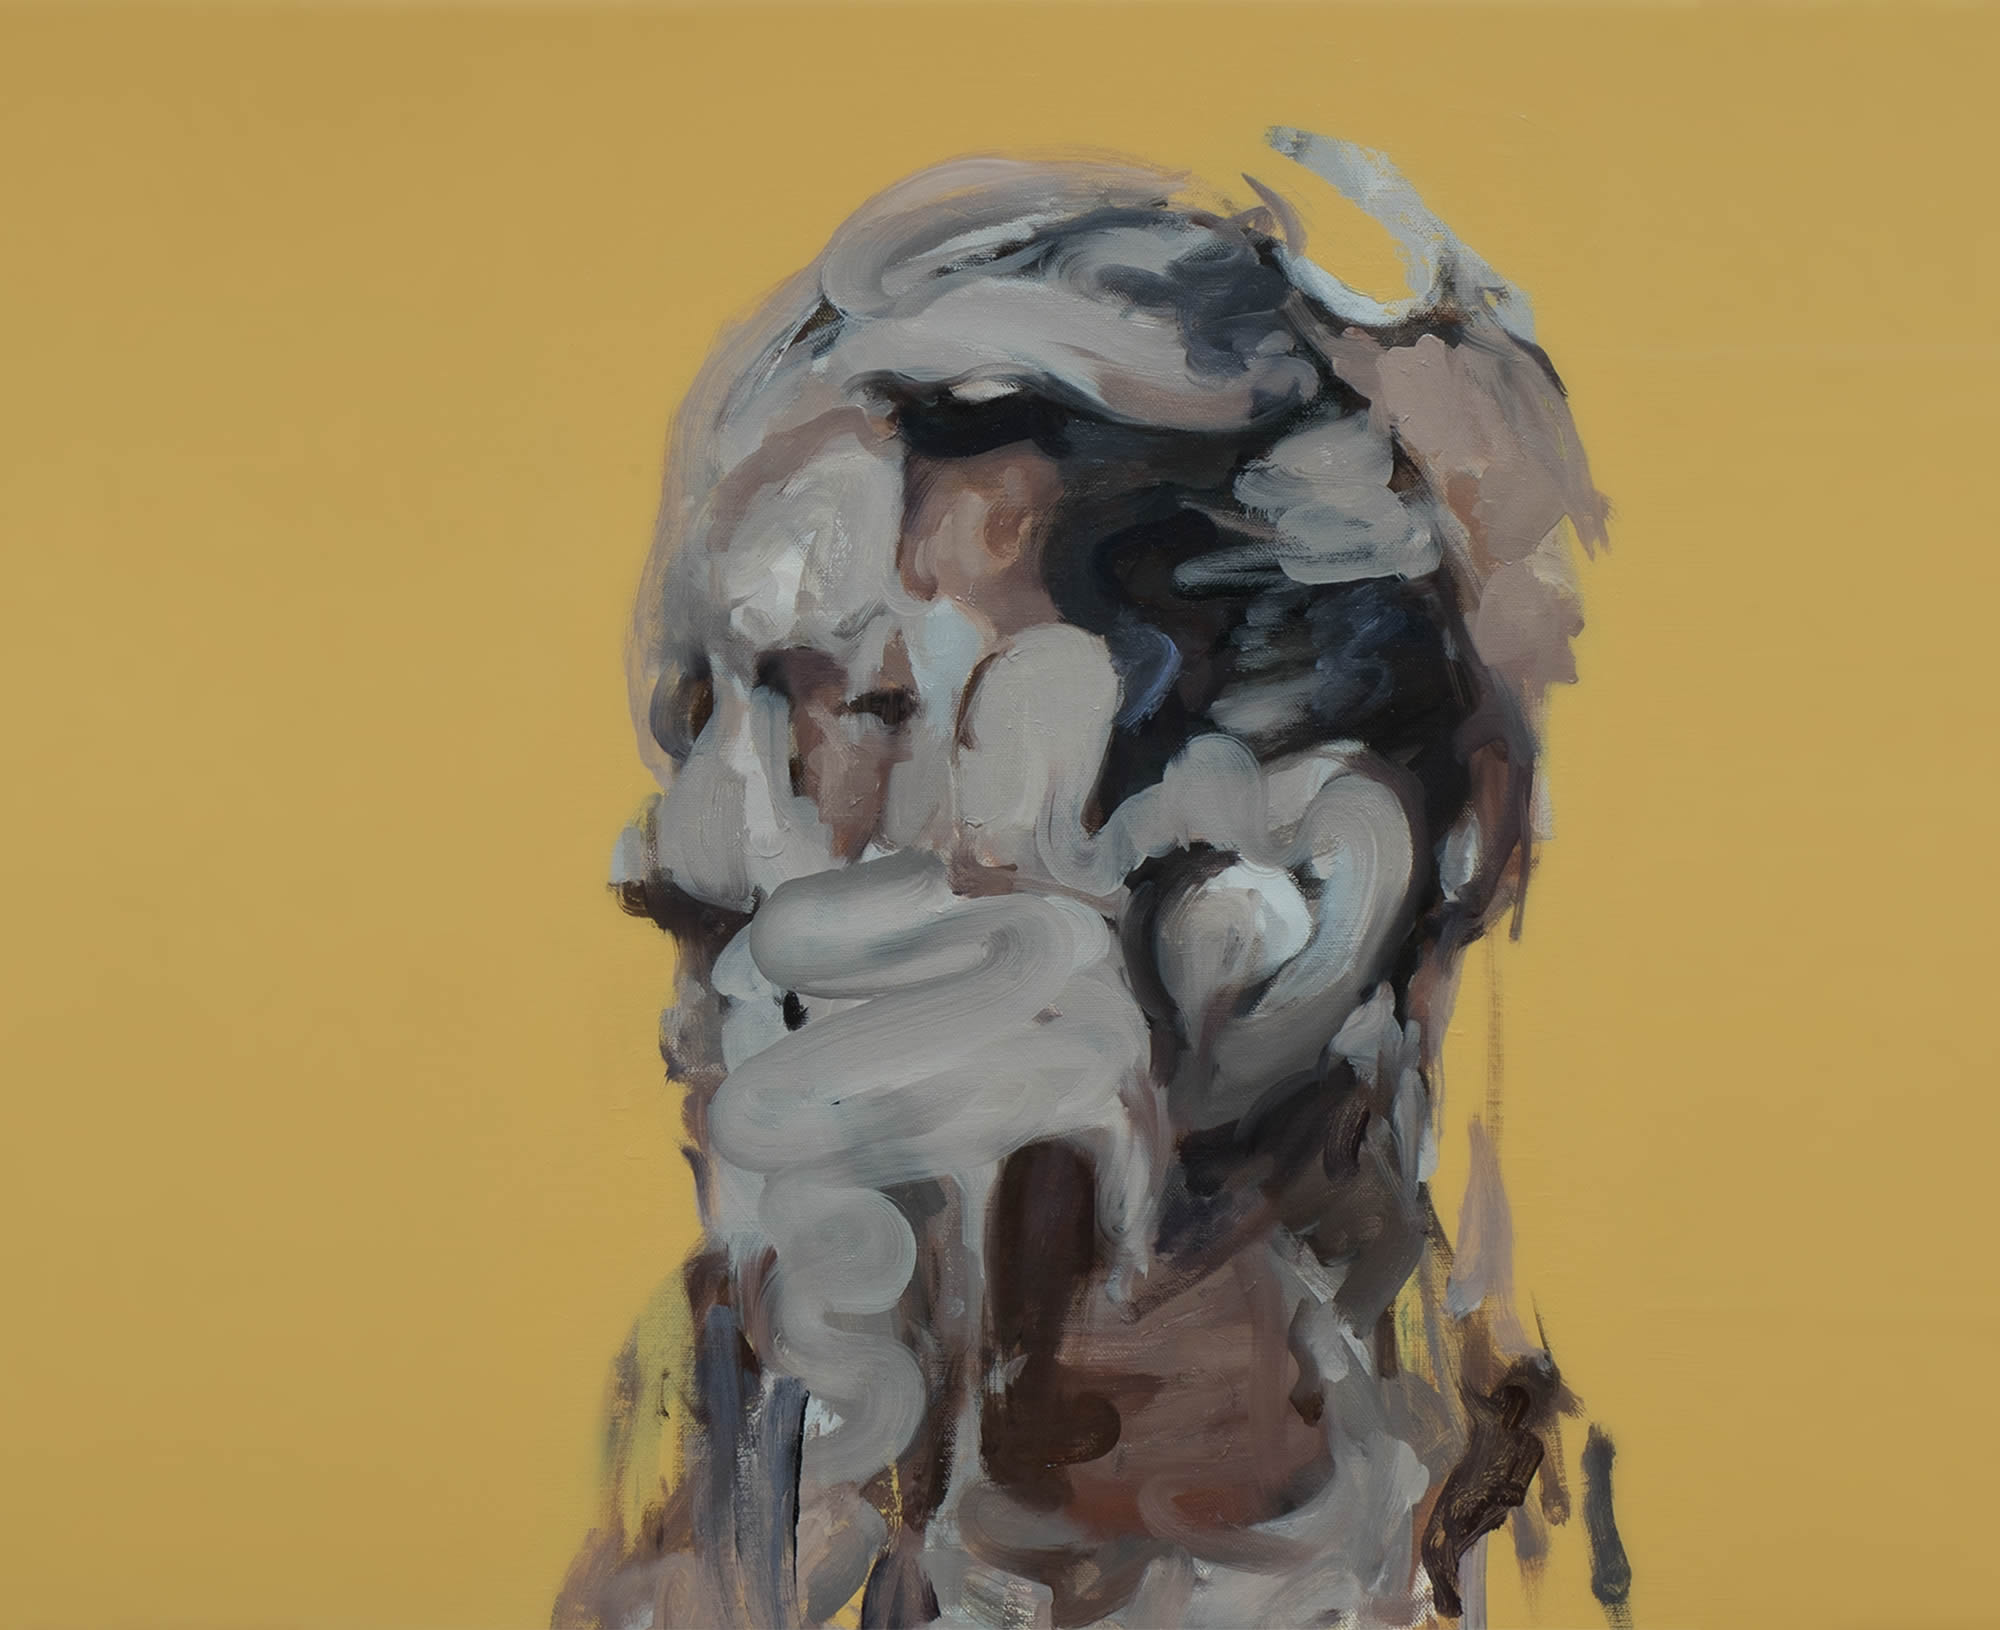 sangduck kim painting colour body abstract portrait horror portrait